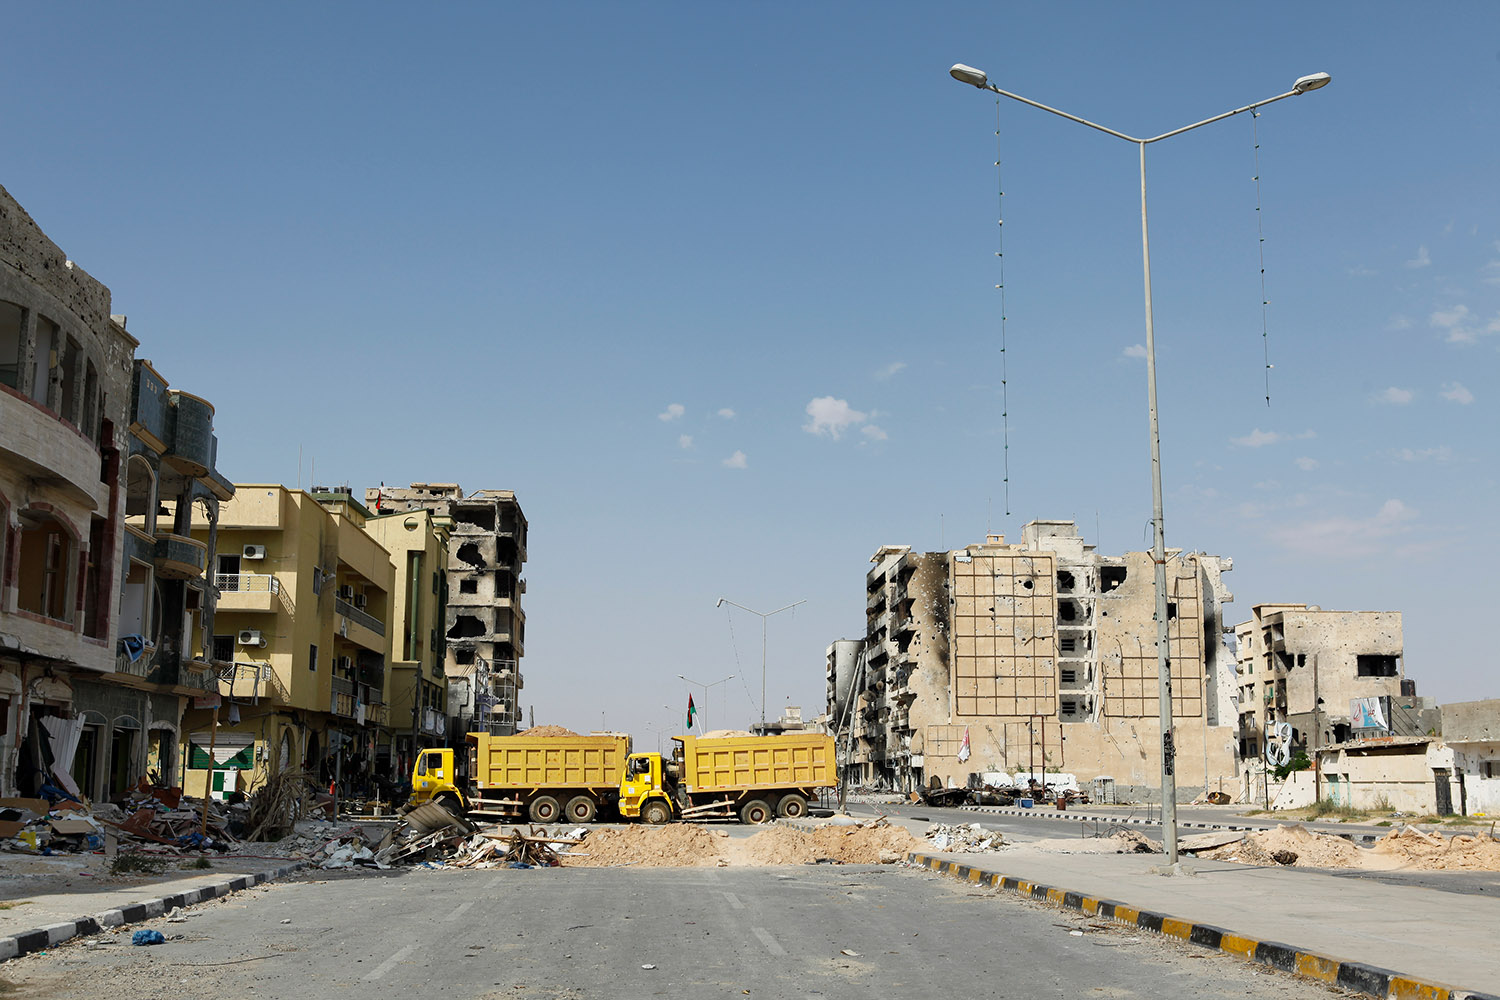 Vue de Misrata, ville détruite par les hommes de Kadhafi. Les immeubles sont éventrés, brûlés, bombardés.